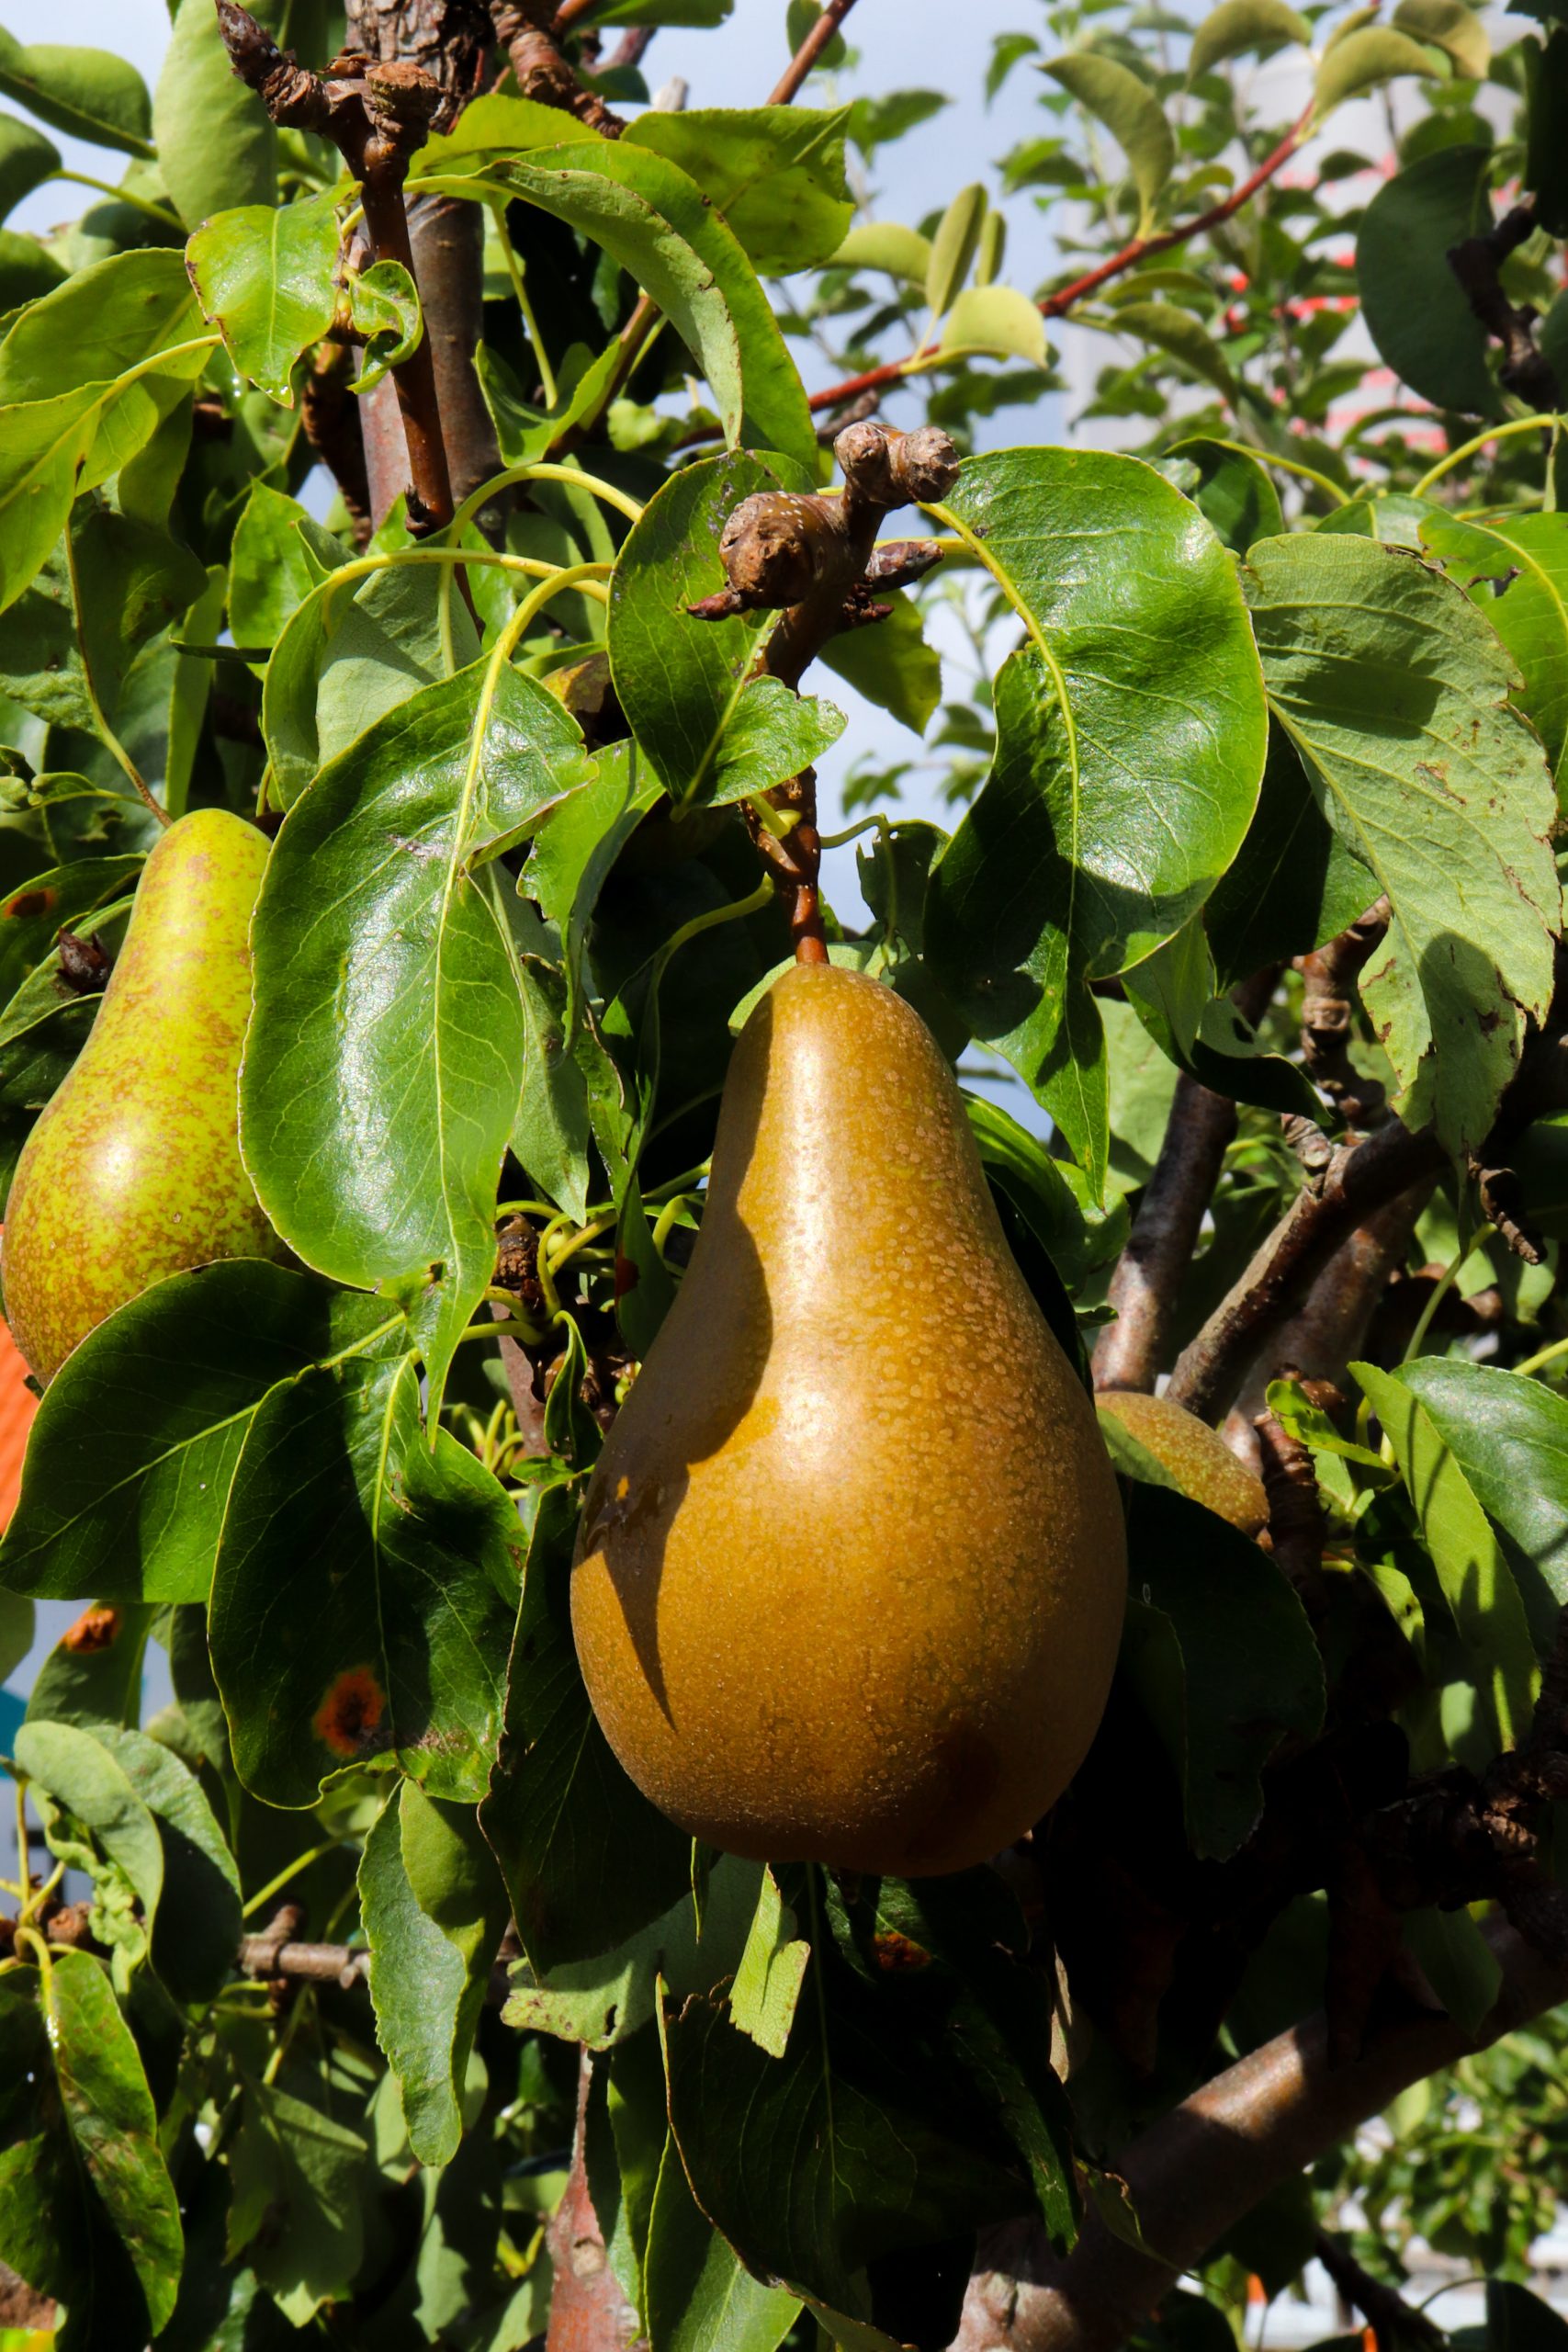 How Many Pears Does A Tree Produce?